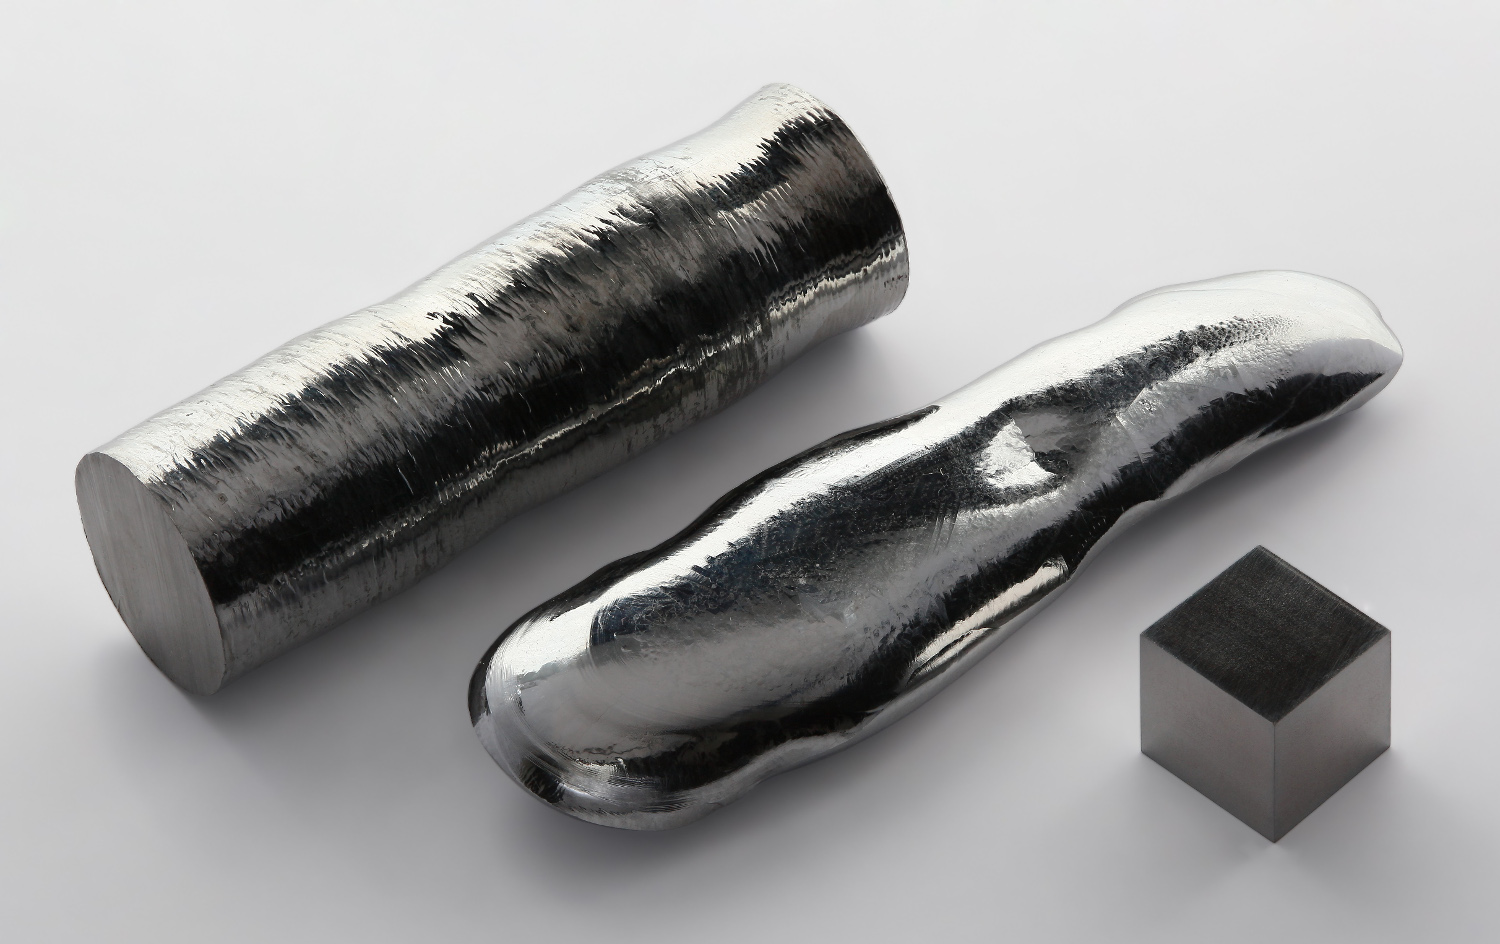 Le rhénium possède le point d’ébullition le plus élevé de tous les éléments chimiques. De gauche à droite : une barre de rhénium à 99,995 %, un monocristal de rhénium de haute pureté (99,999 %) produit par la méthode de la zone fondue et un cube de 1 cm de côté du même métal à (99,99 %). © Alchemist-hp, Wikimedia Commons, CC by-nc-nd 3.0